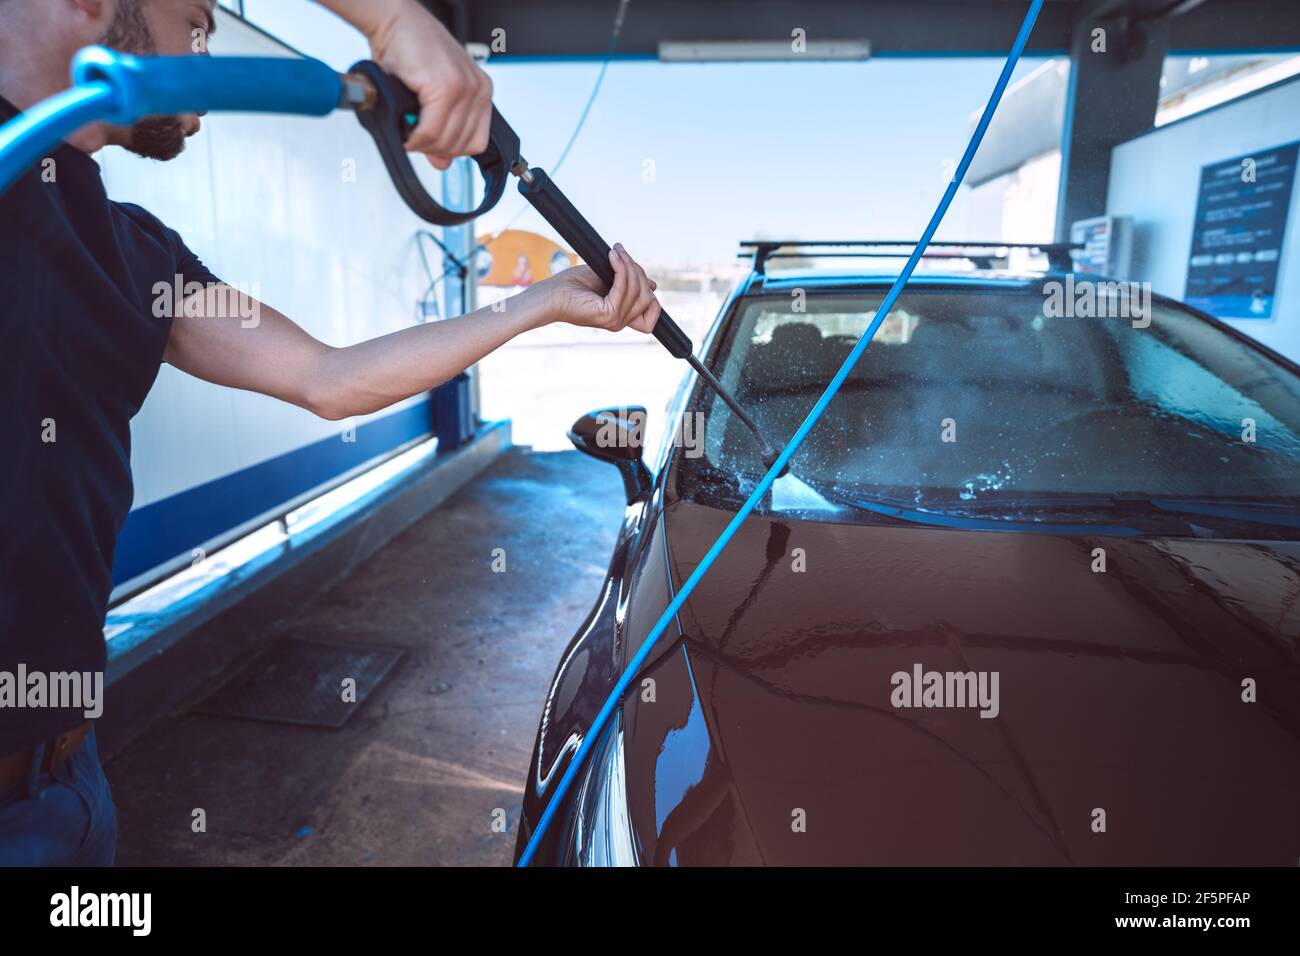 Homme lavant la voiture en libre-service. Nettoyage de la voiture à l'eau haute pression. Lavage intelligent pour voiture Banque D'Images